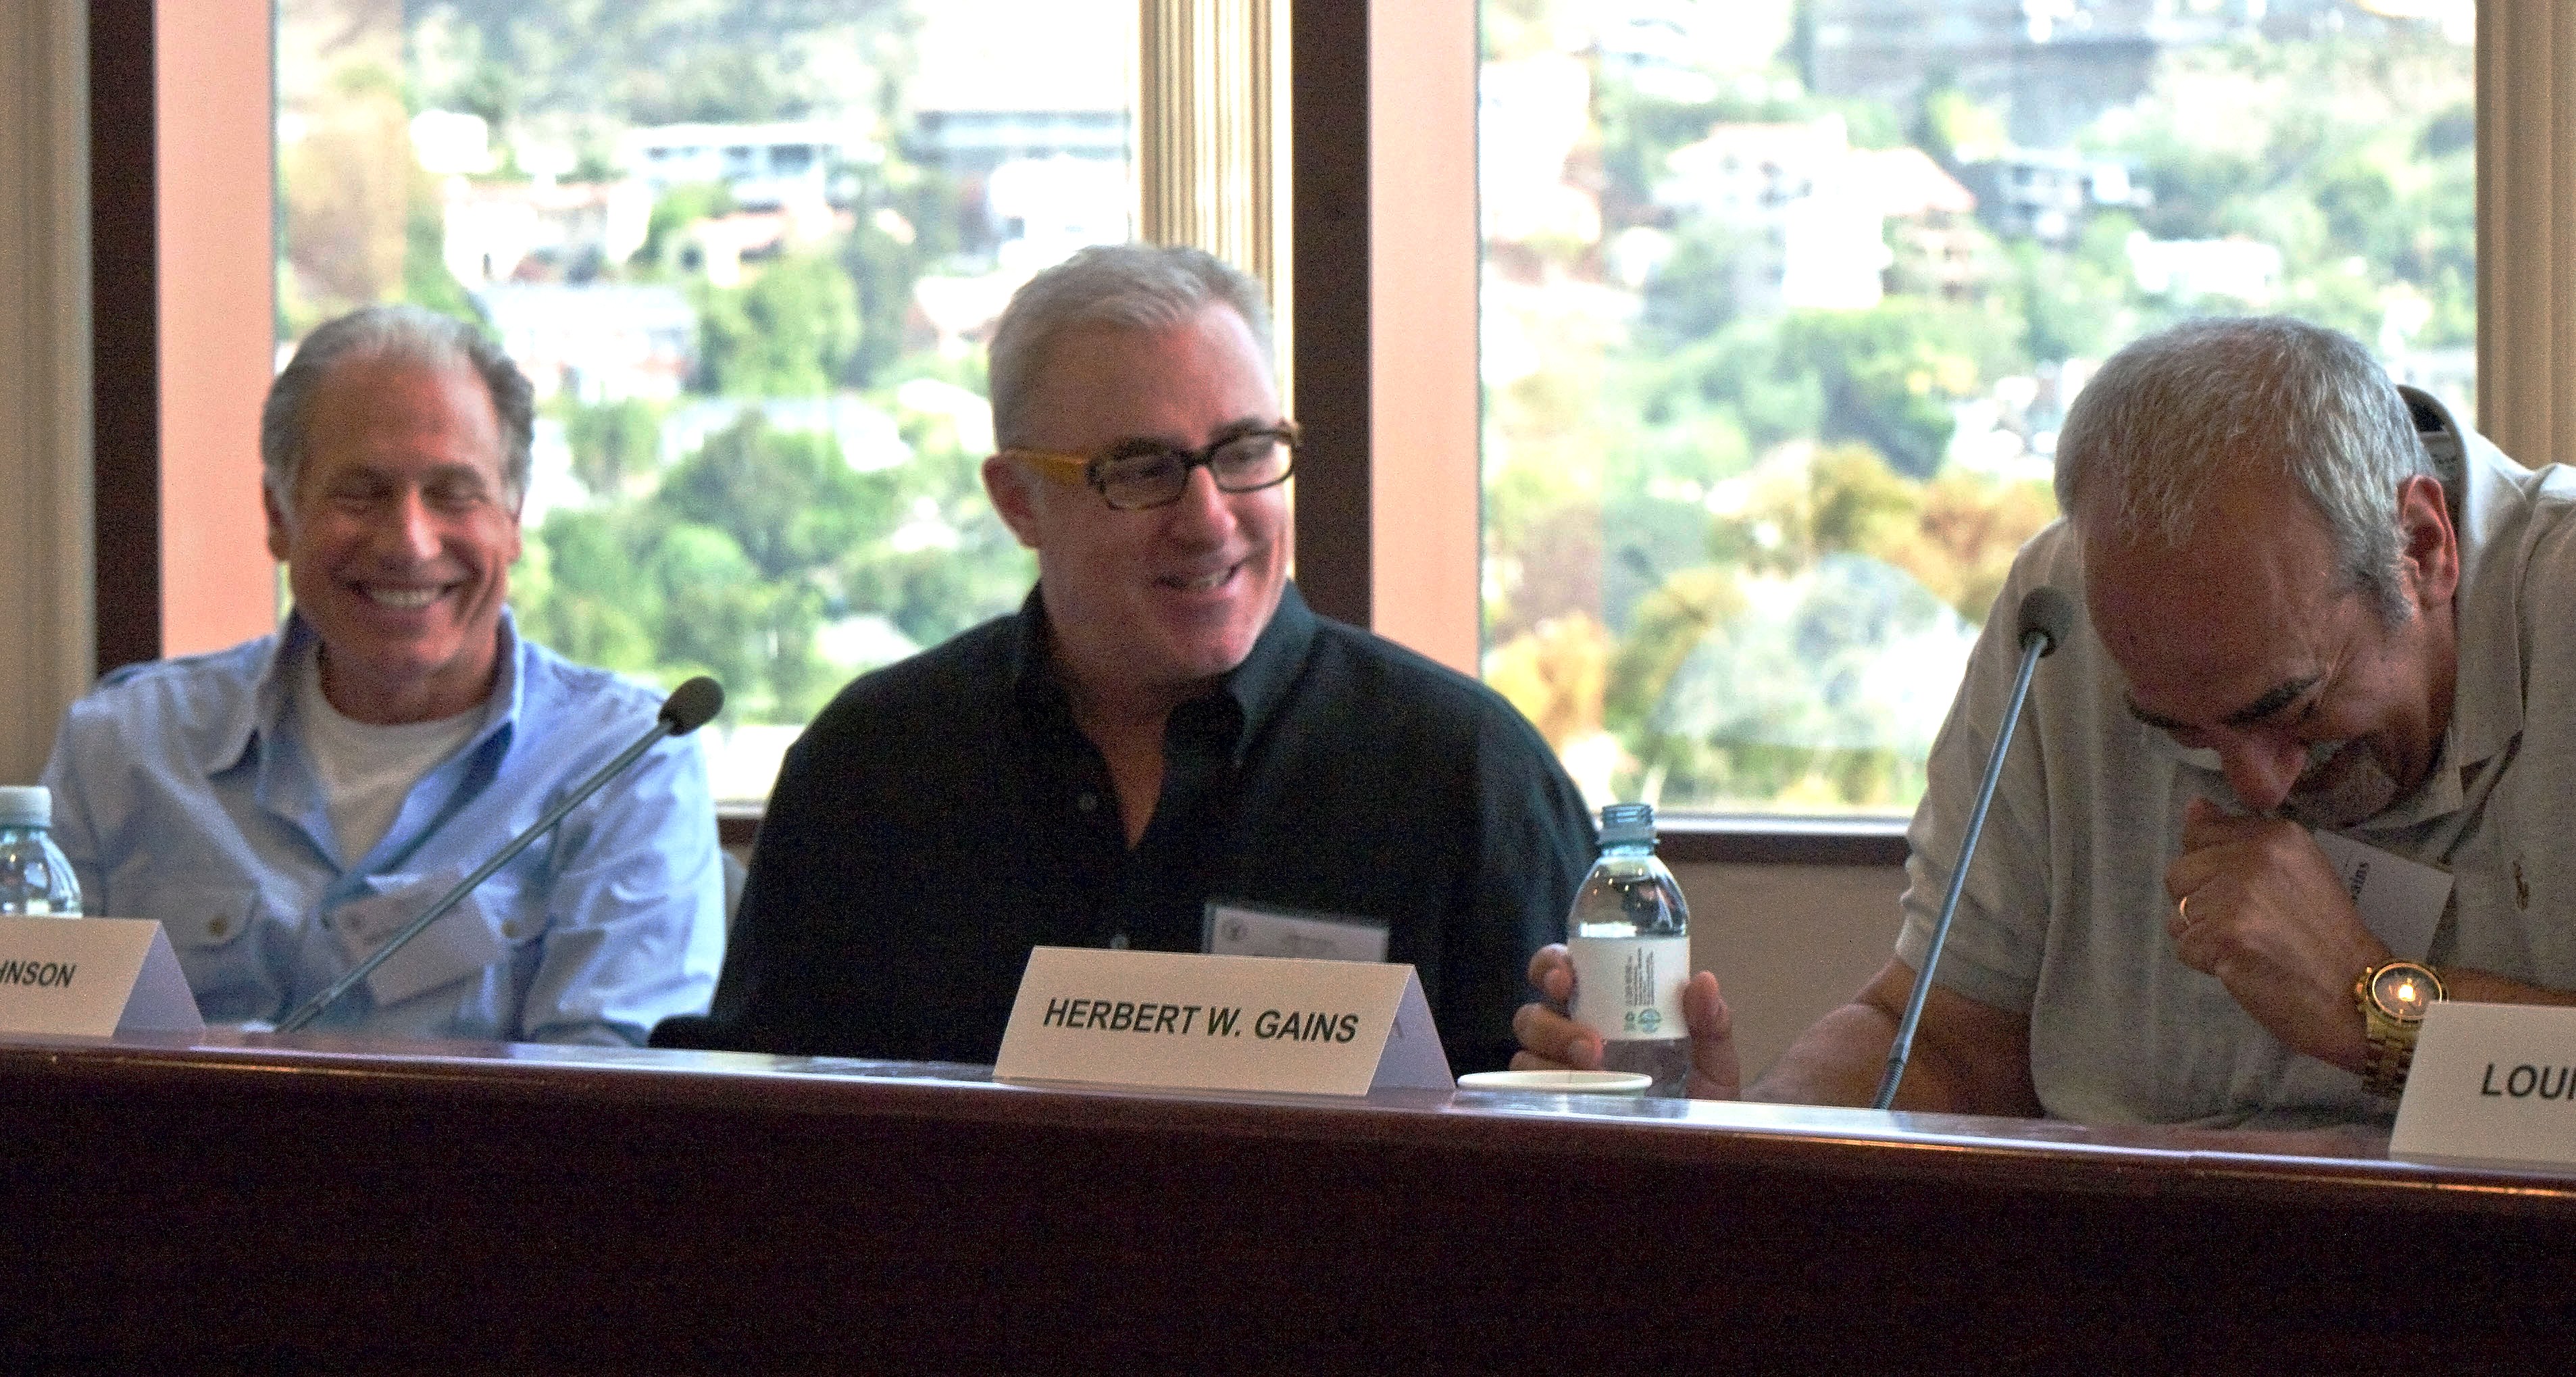 Mike Fottrell, Bill Johnson, Herb Gains - DGA Seminar, 2013